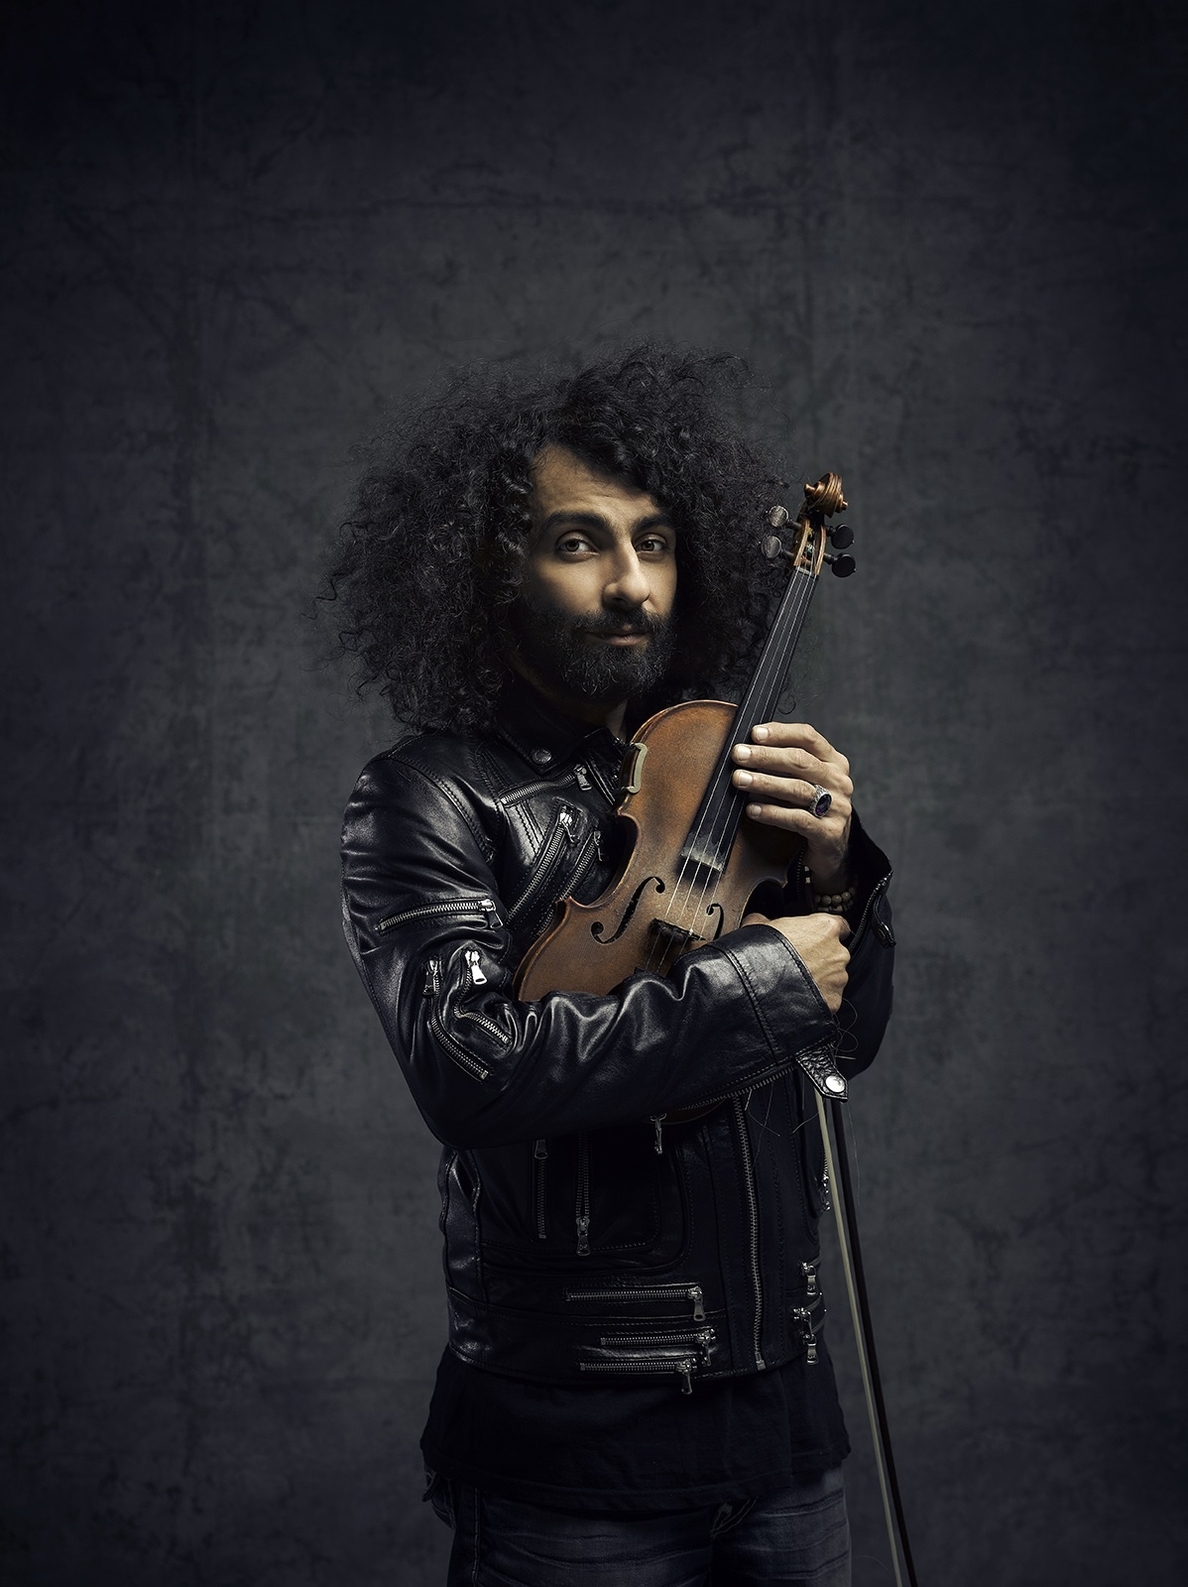 Violinista Ara Malikian, considerado uno de los más brillantes de su generación, en concierto en mayo